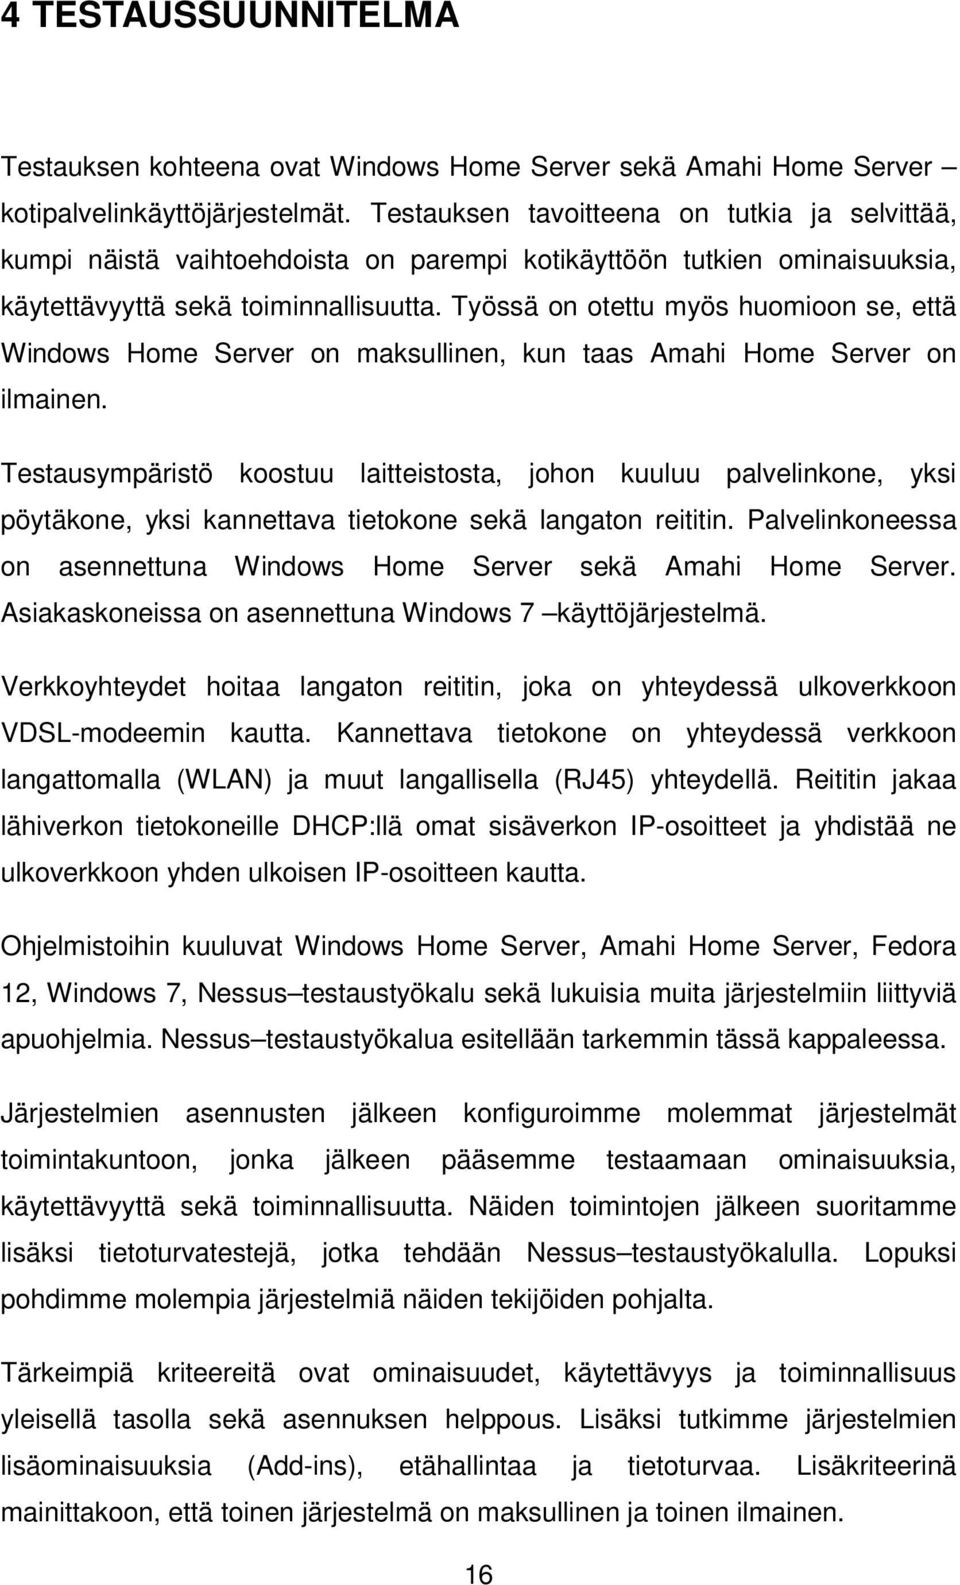 Työssä on otettu myös huomioon se, että Windows Home Server on maksullinen, kun taas Amahi Home Server on ilmainen.